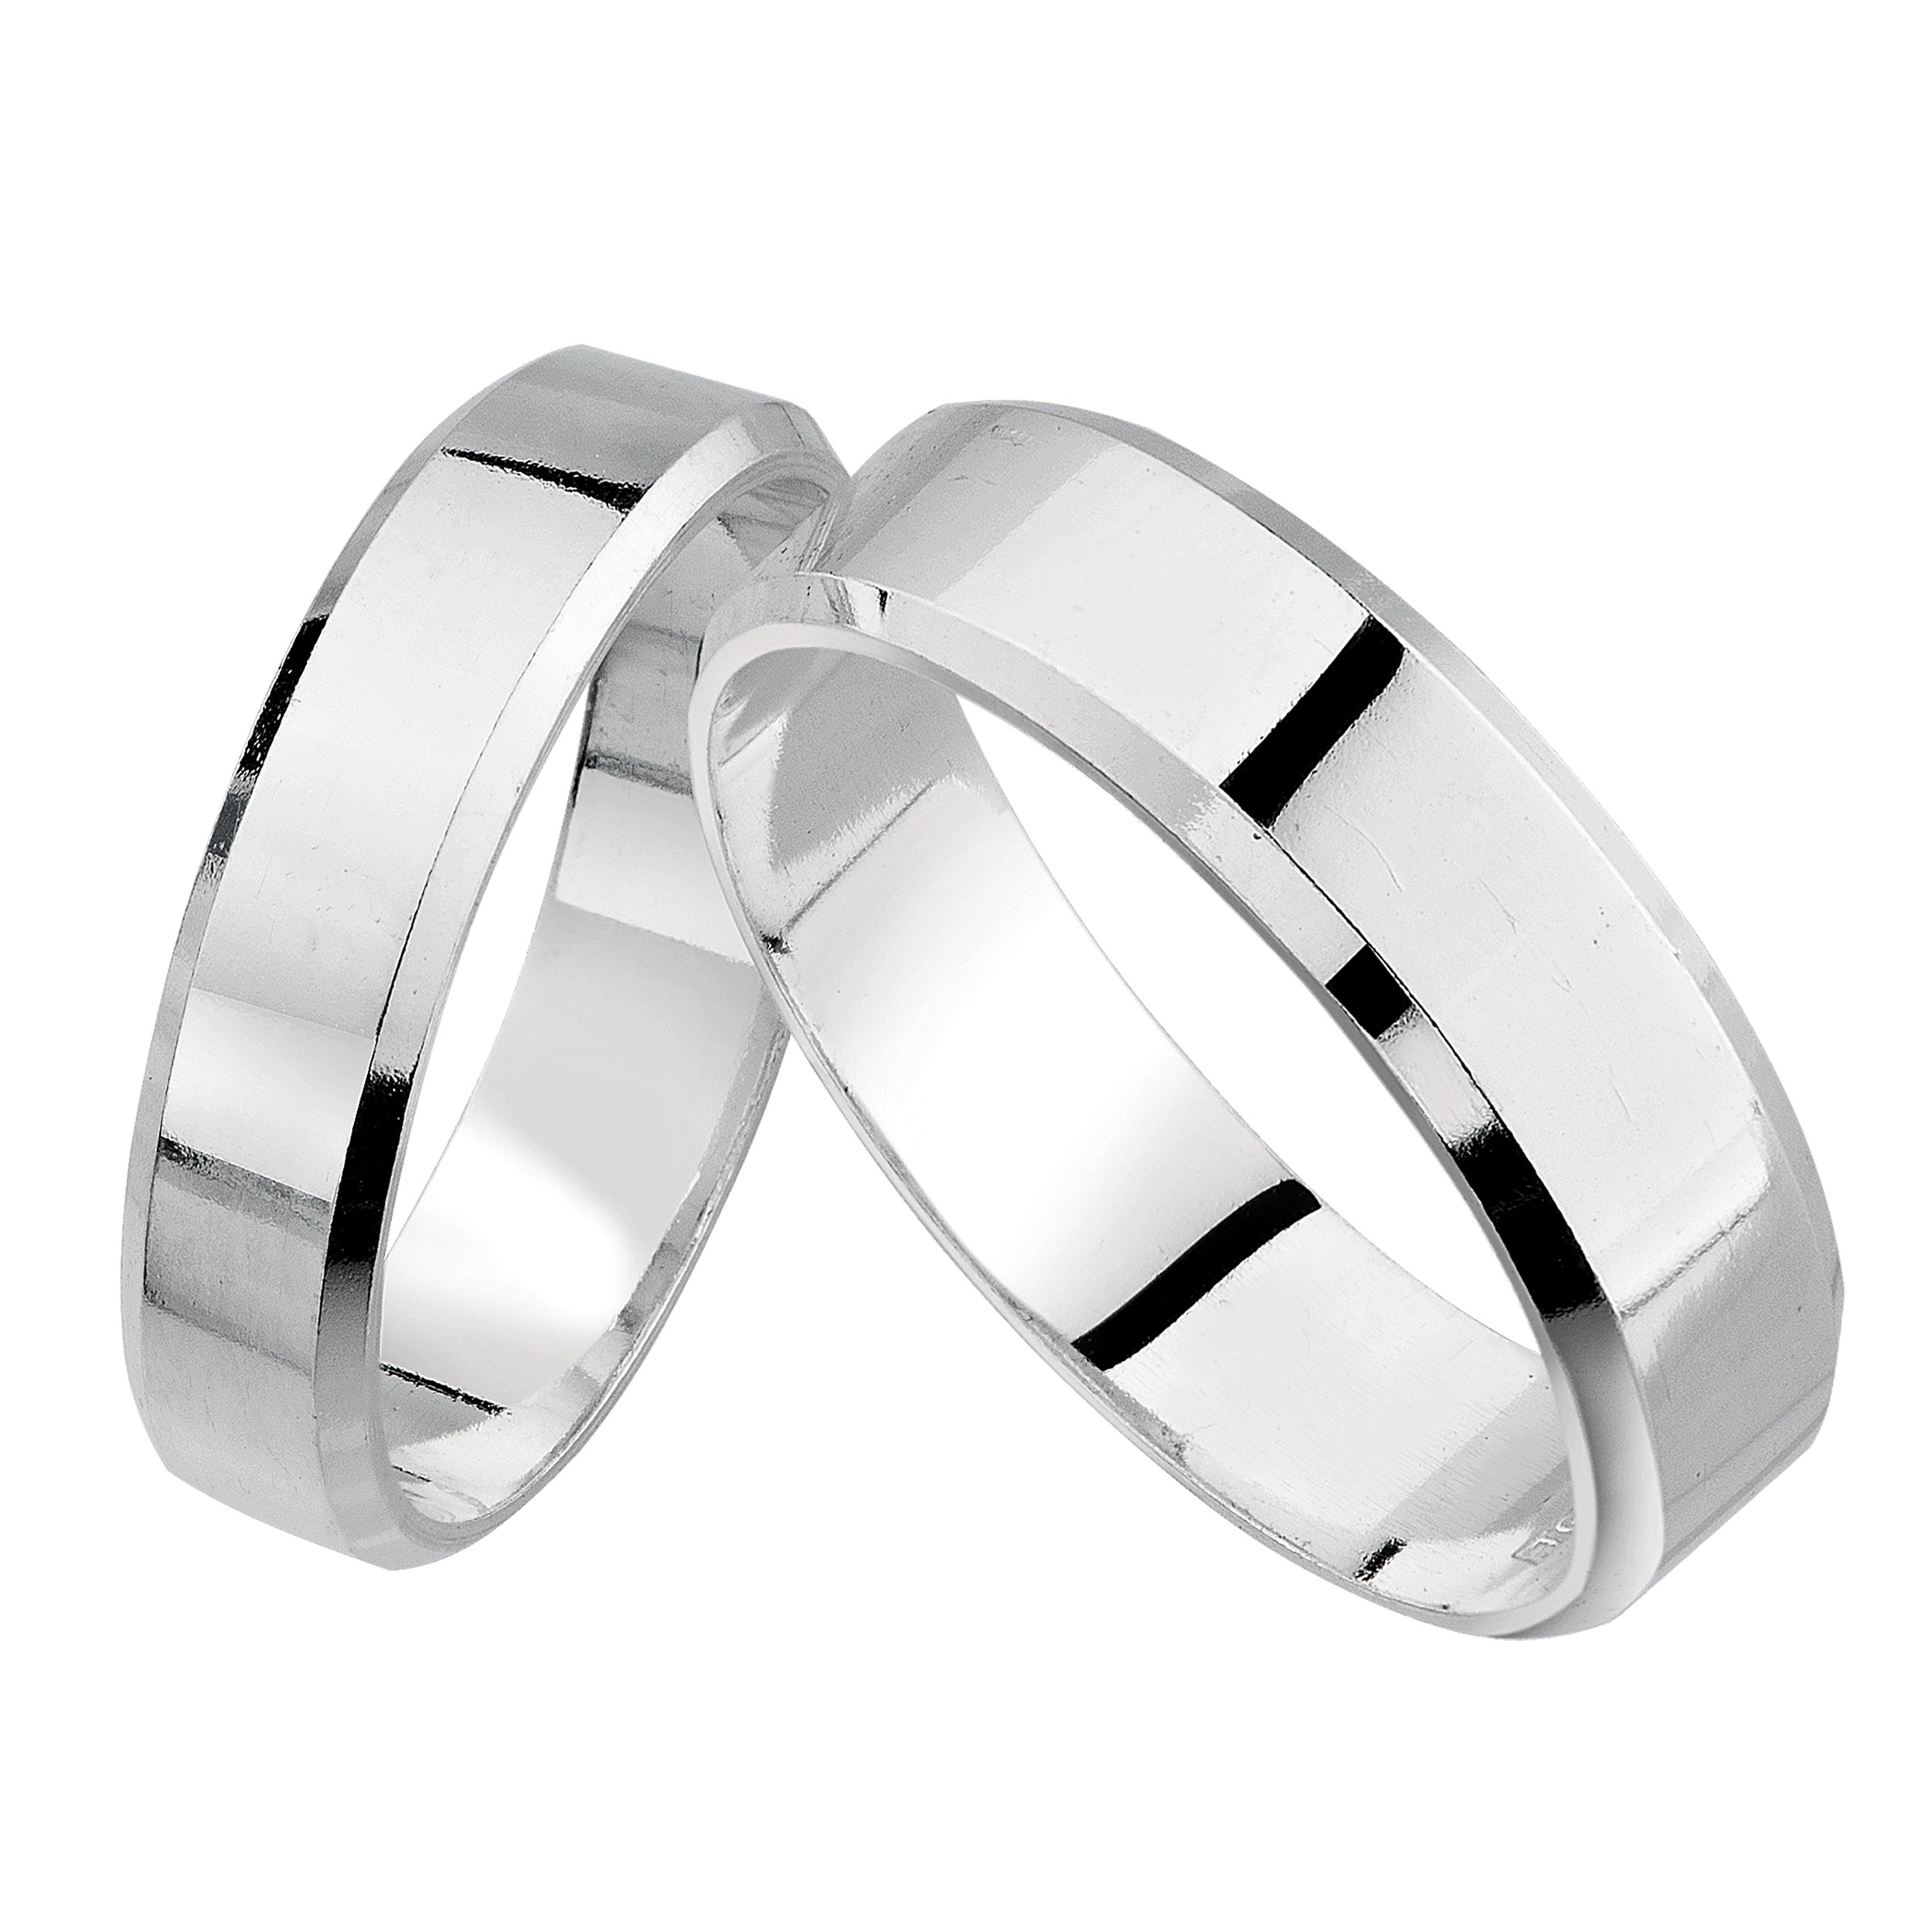 Обручальное кольцо серебро мужское. SEREBRO 925 Kolca обручальные. Серебряное обручальное кольцо. Мужские обручальные кольца из серебра. Широкие серебряные обручальные кольца.